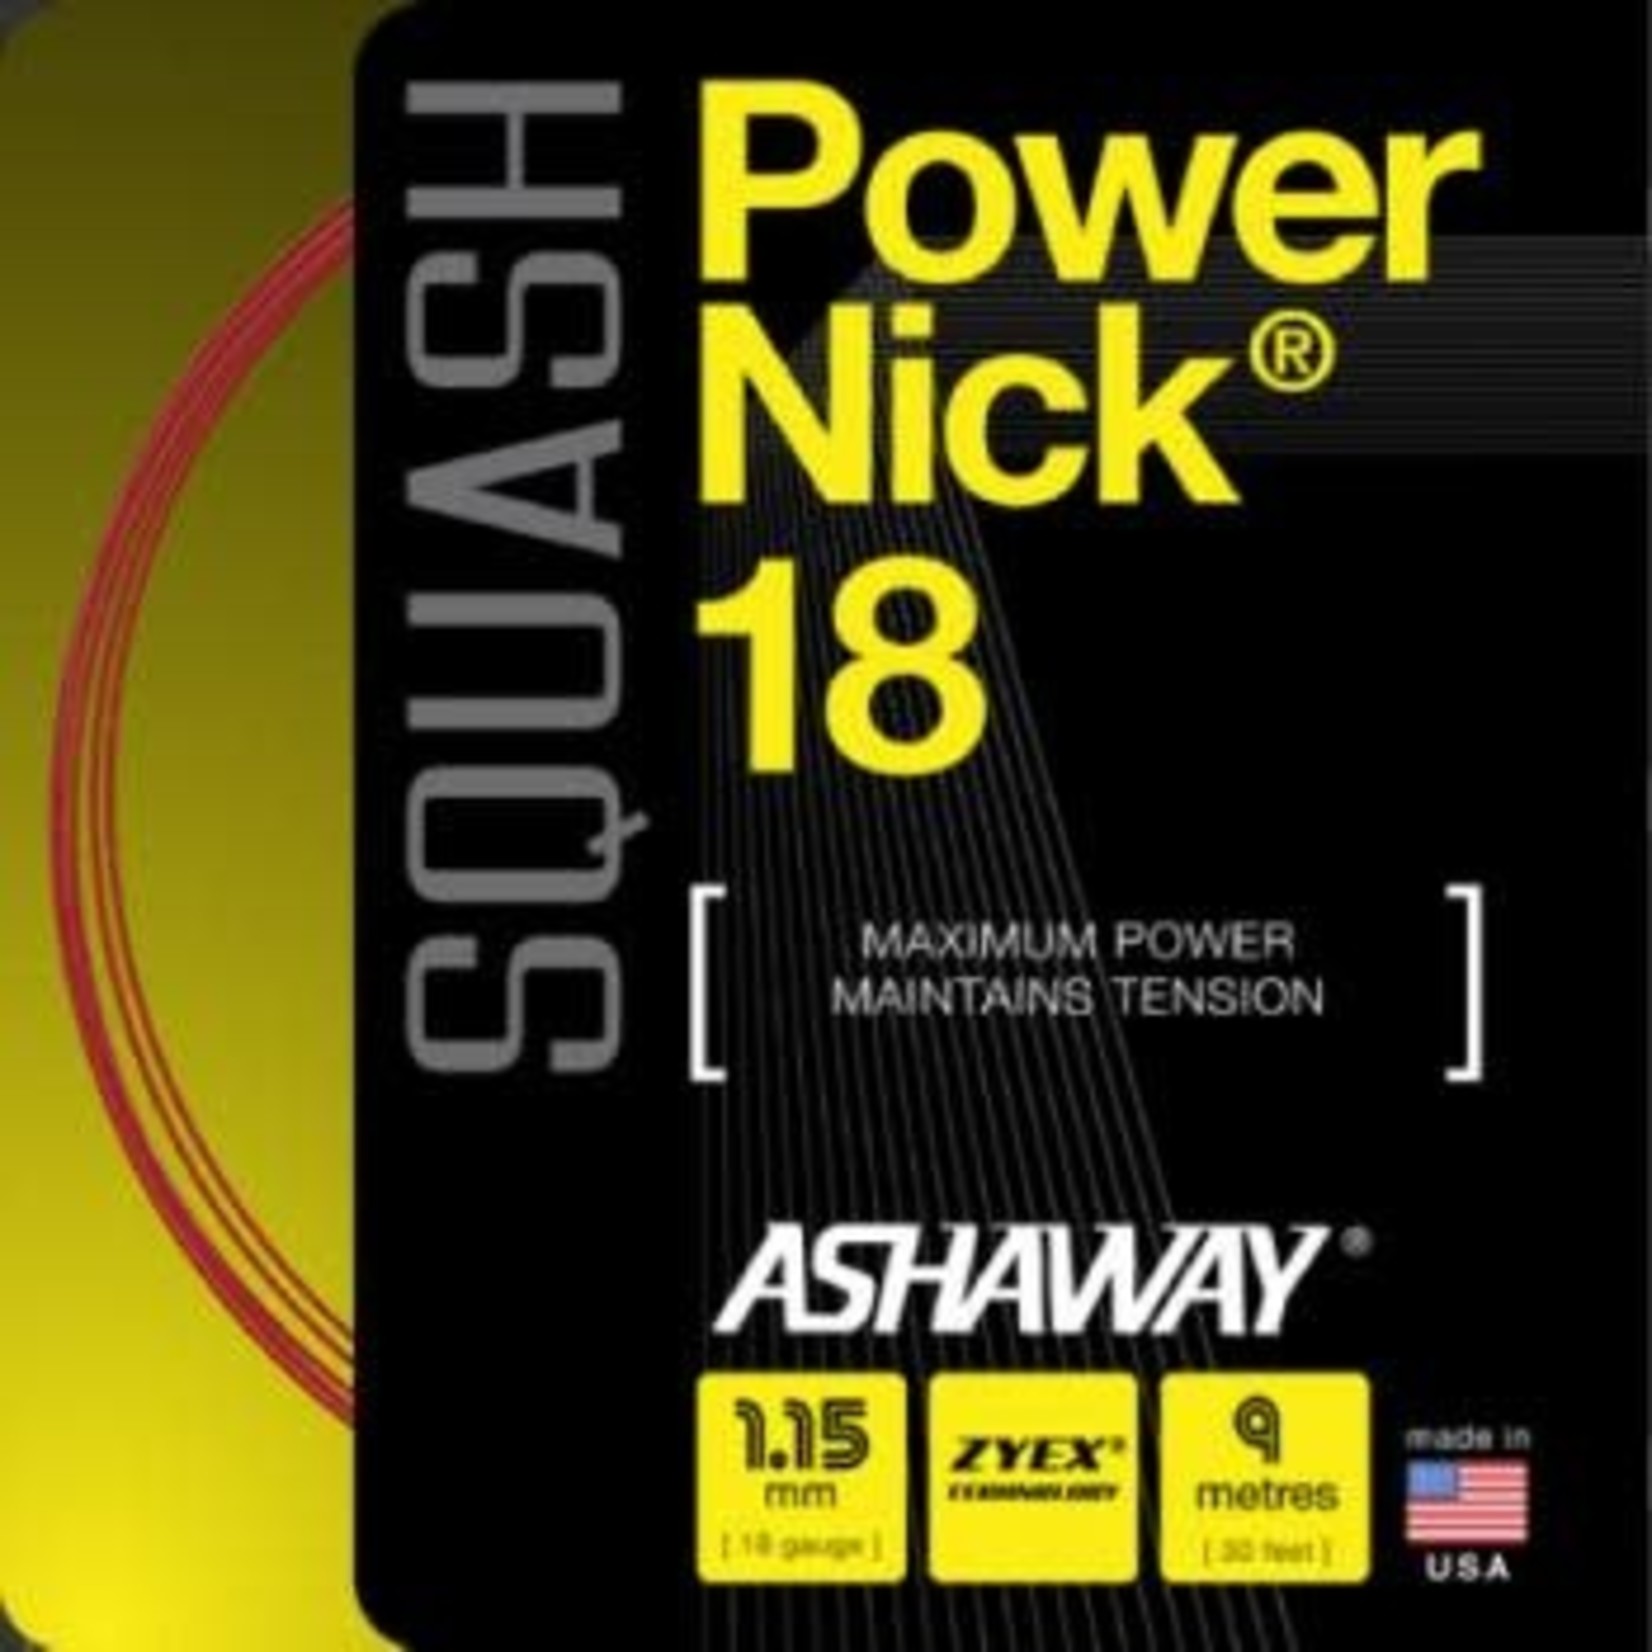 Ashaway Ashaway PowerNick Squash Strings